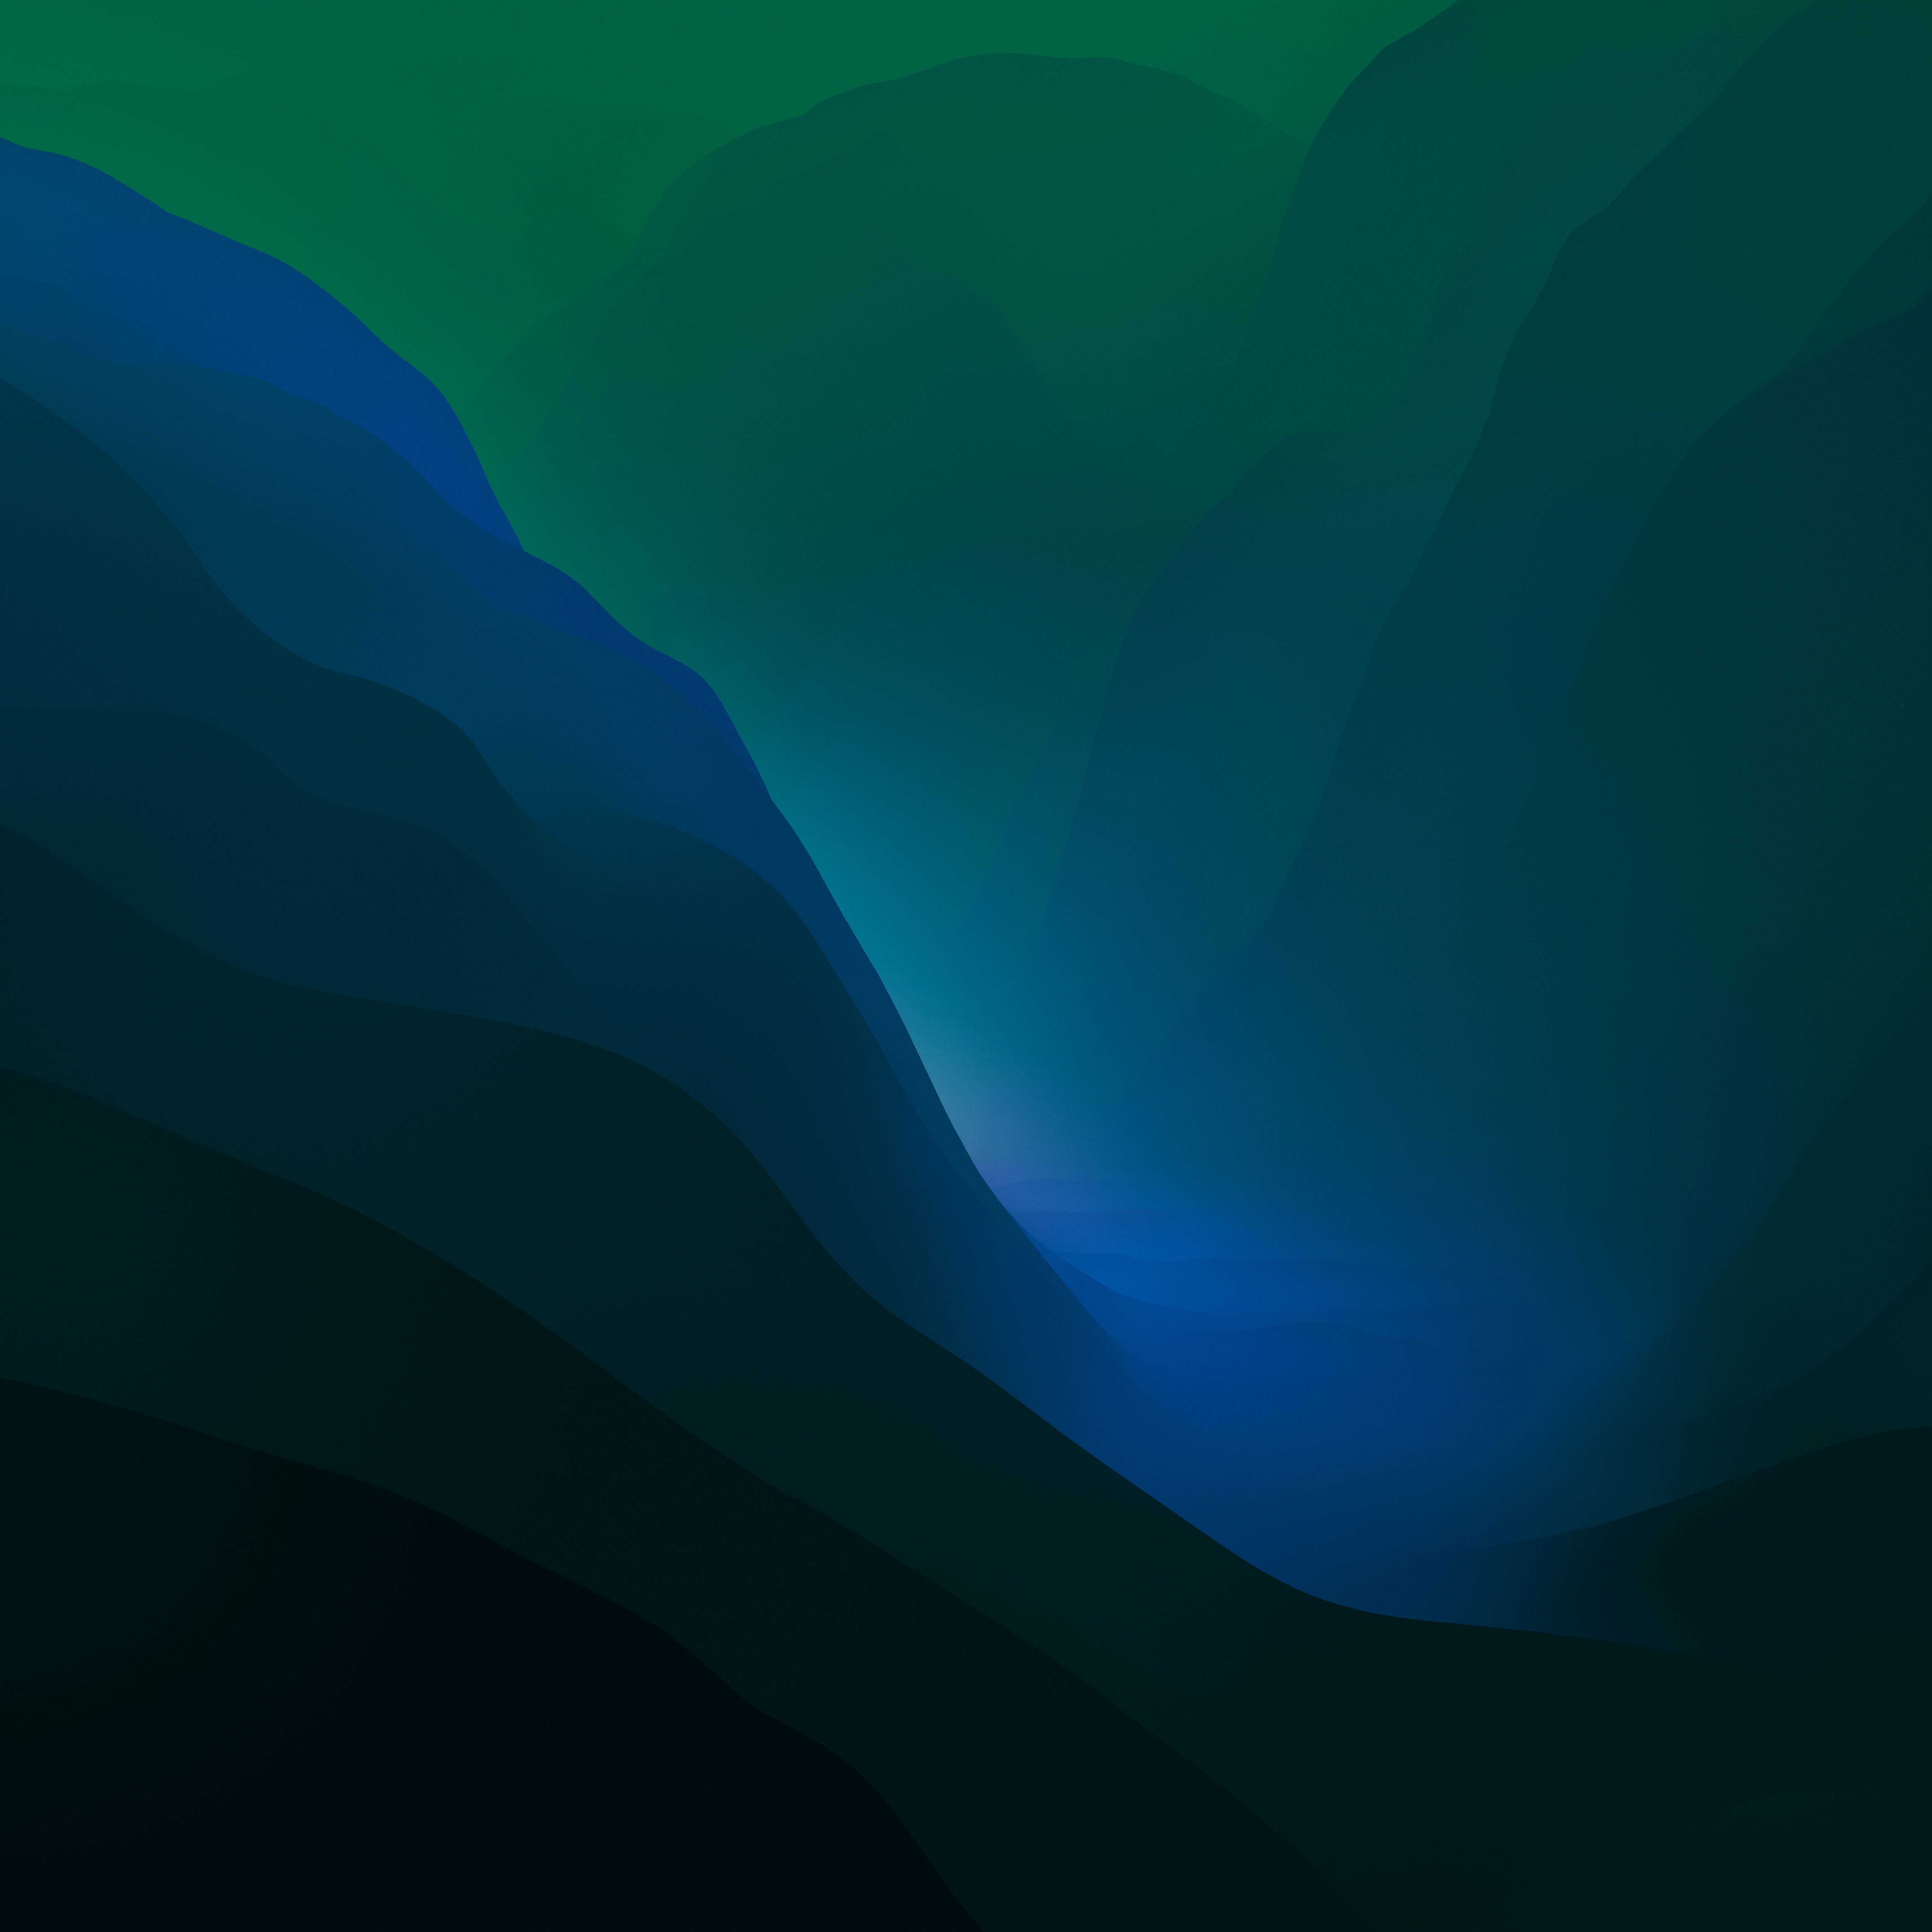 macOS Monterey Wallpaper 4K, Stock, Green, Dark Mode, Gradients, #5890